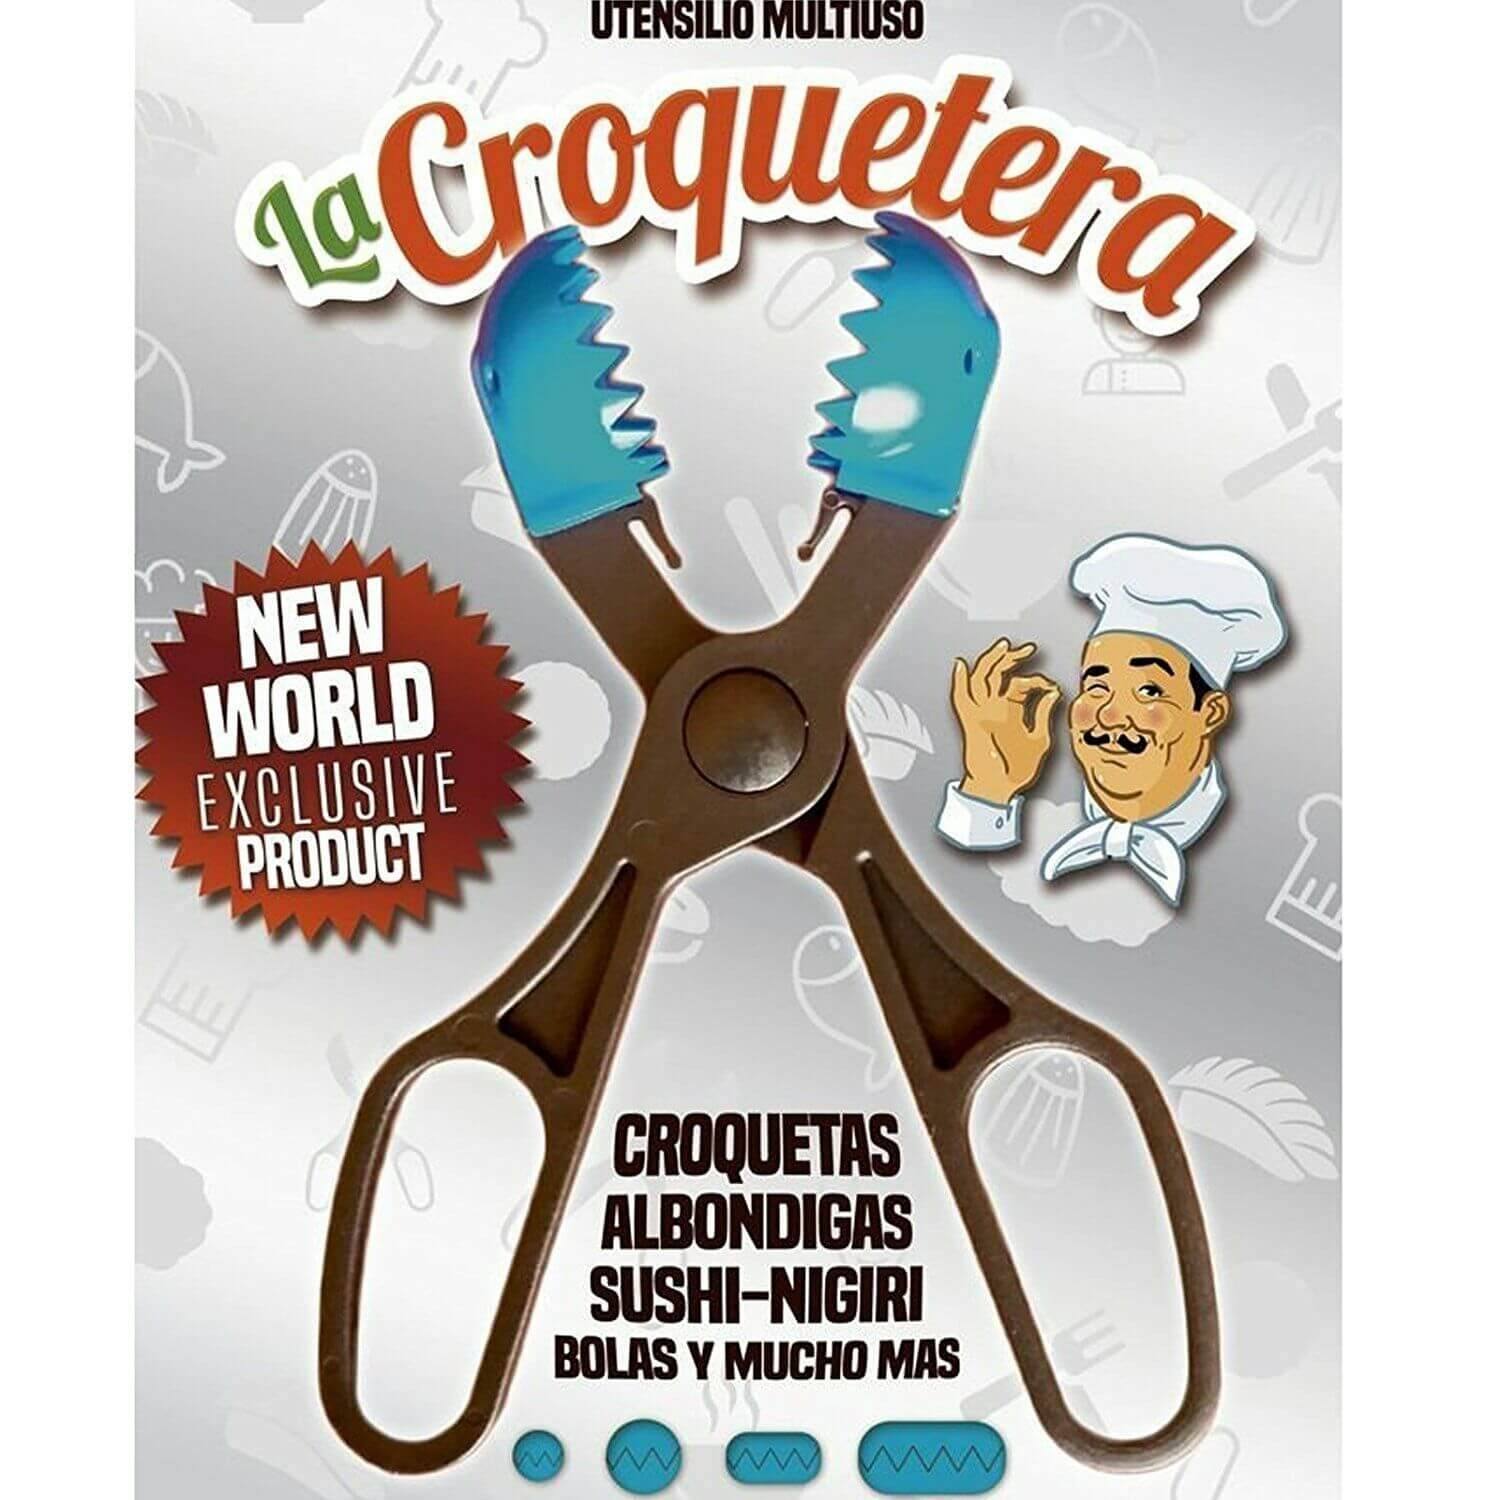 La Croquetera - Pinzas molde para hacer croquetas